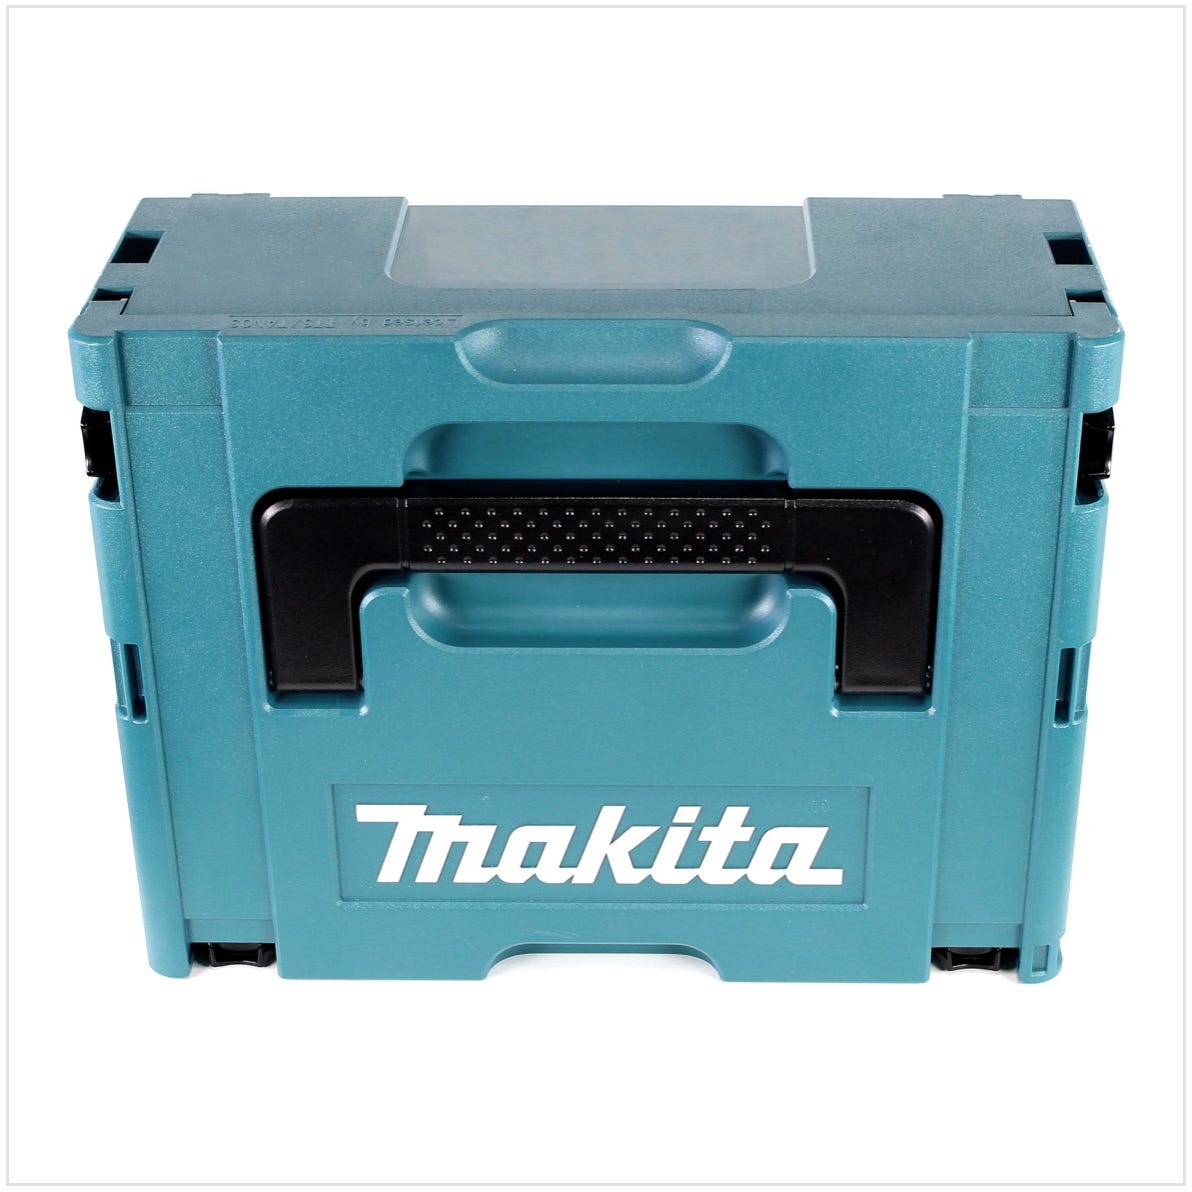 Makita DTW 1001 RF1J 18 V Li-Ion Brushless Boulonneuse à chocs sans fil avec Boîtier Makpac + 1x Batterie BL 1830 3,0 Ah + Chargeur rapide DC 18 RC 2